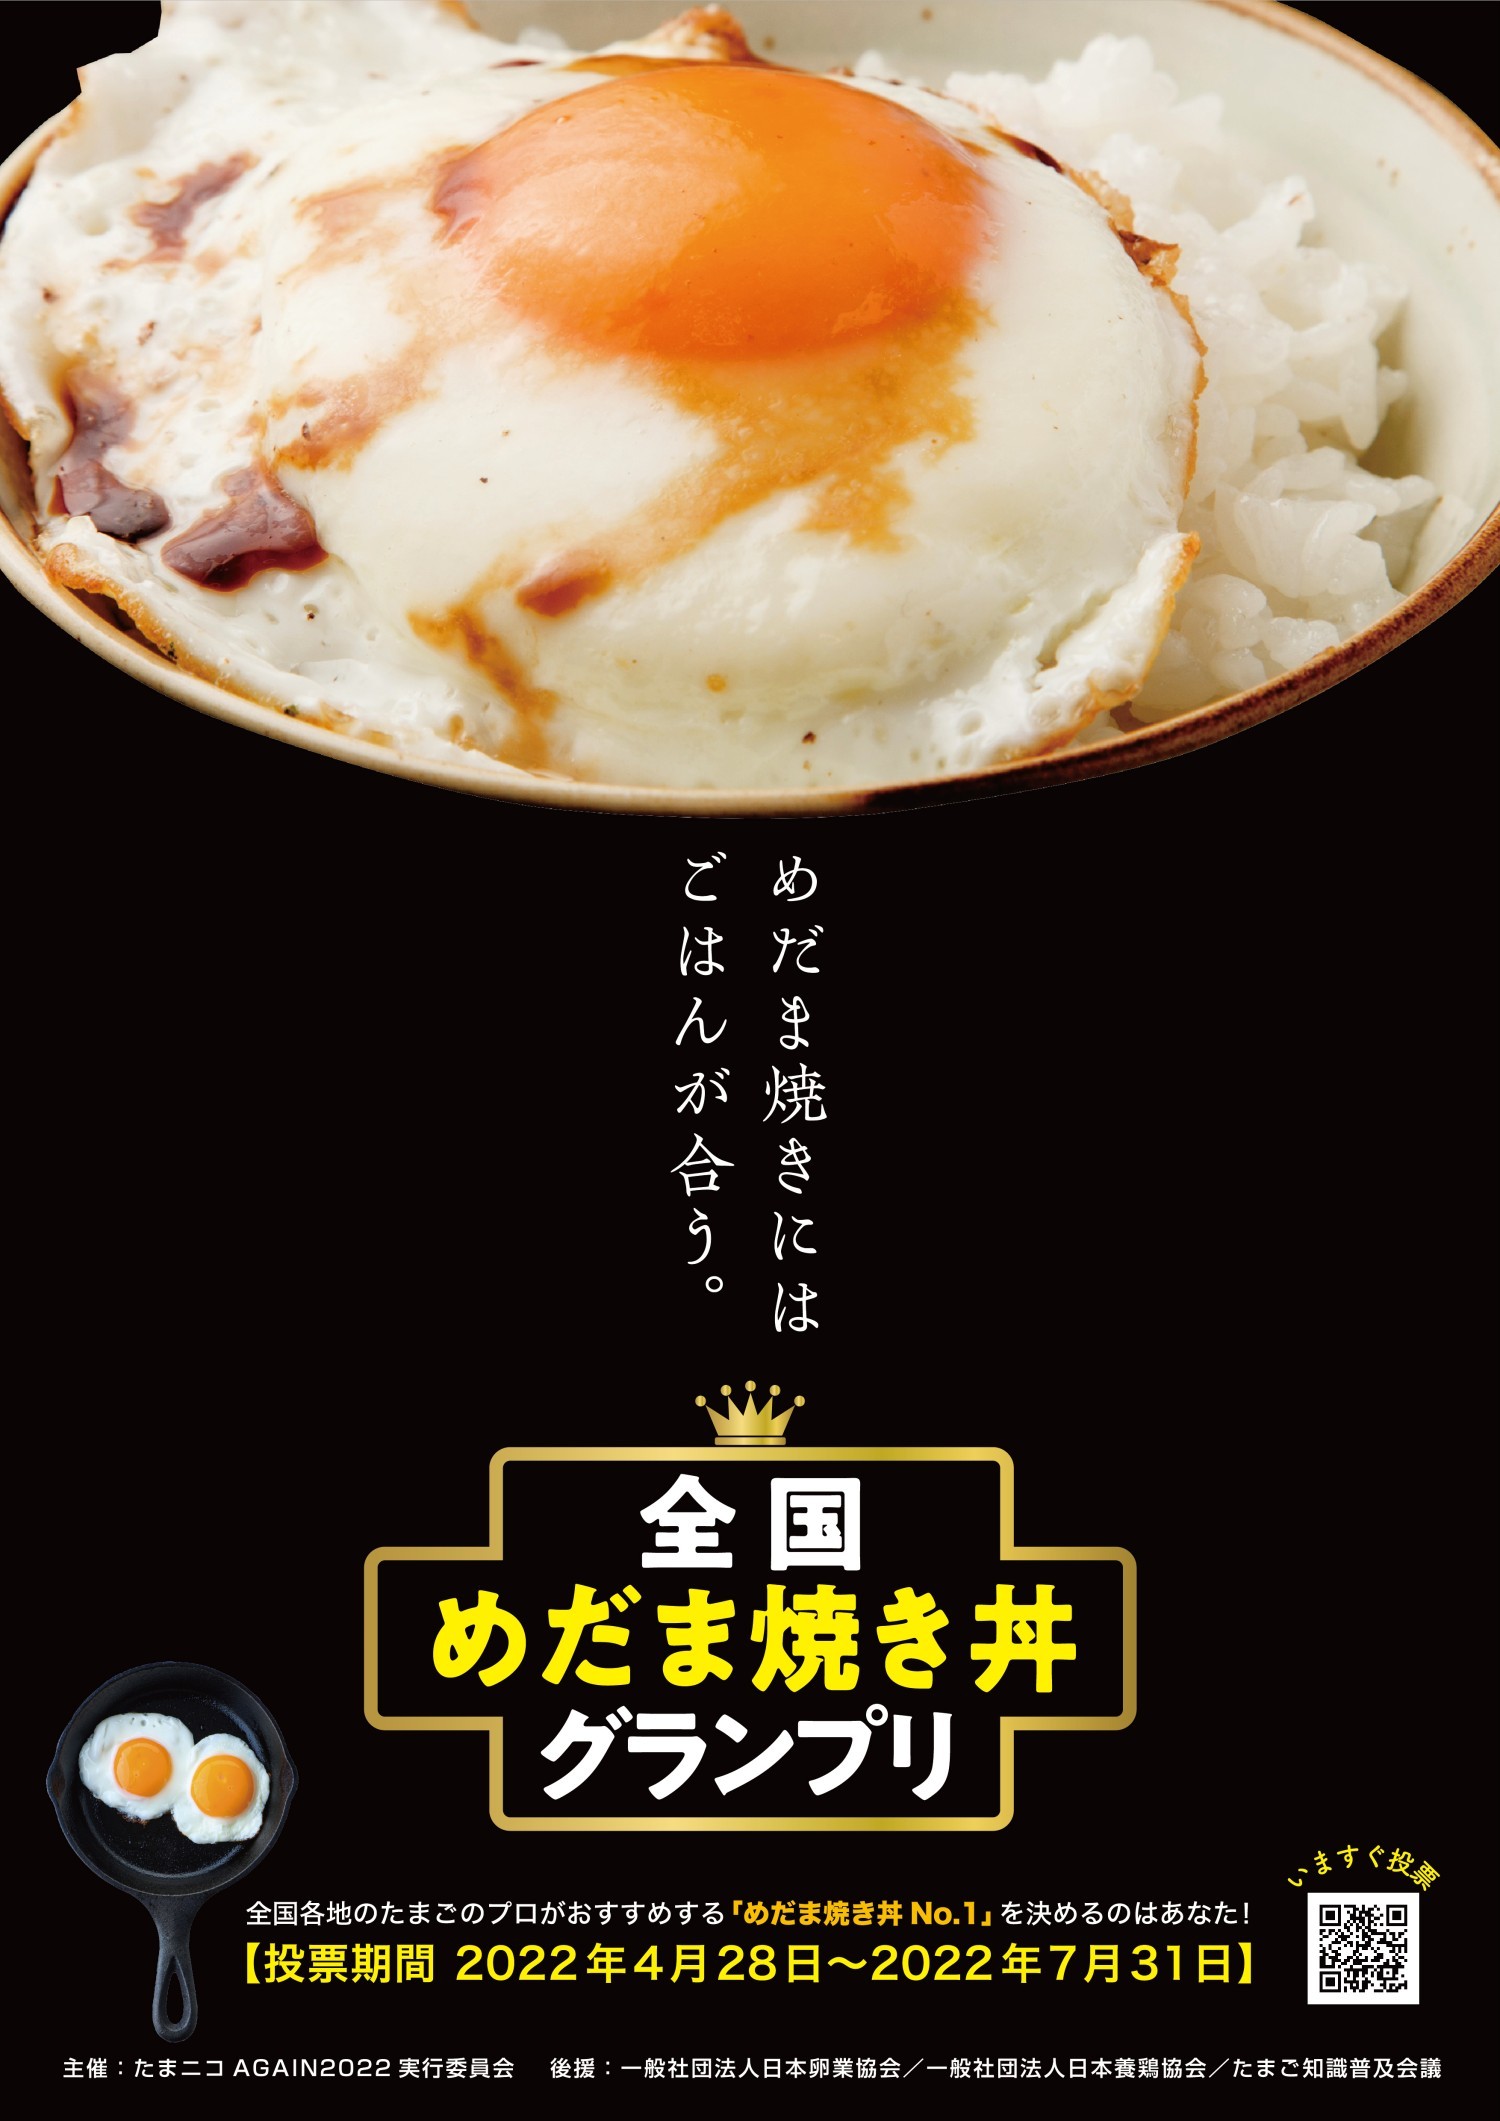 『全国めだま焼き丼グランプリ』結果発表！
“たまごのプロ”が選んだ飲食店の『めだま焼き丼』が一堂に！
全国の消費者が選ぶ日本一の目玉焼きのせごはん